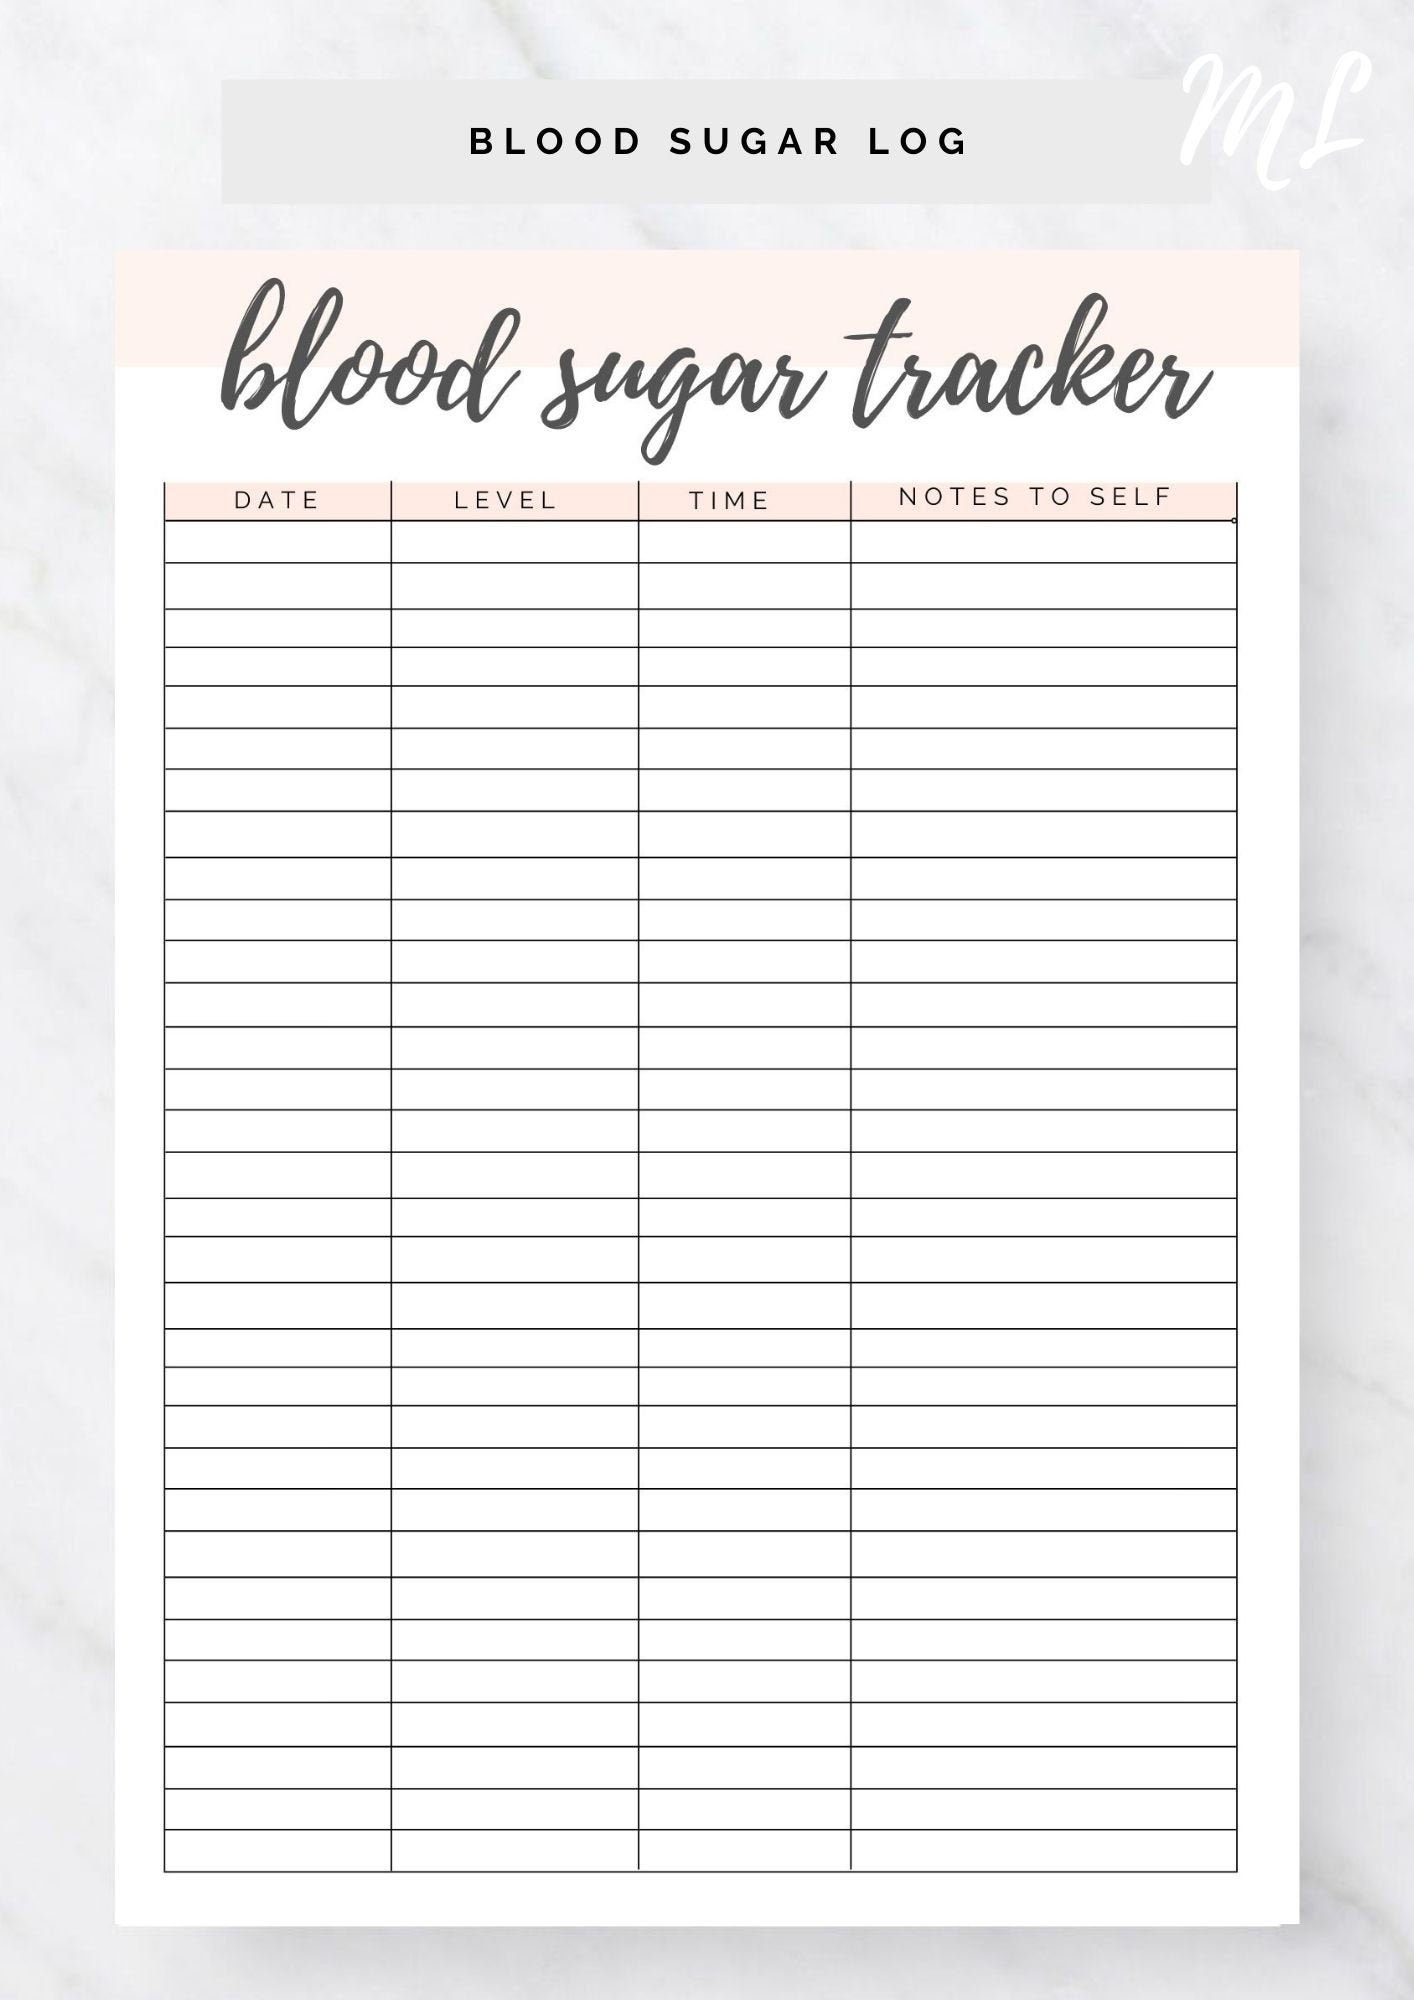 blood-sugar-log-printable-blood-sugar-reading-tracker-etsy-uk